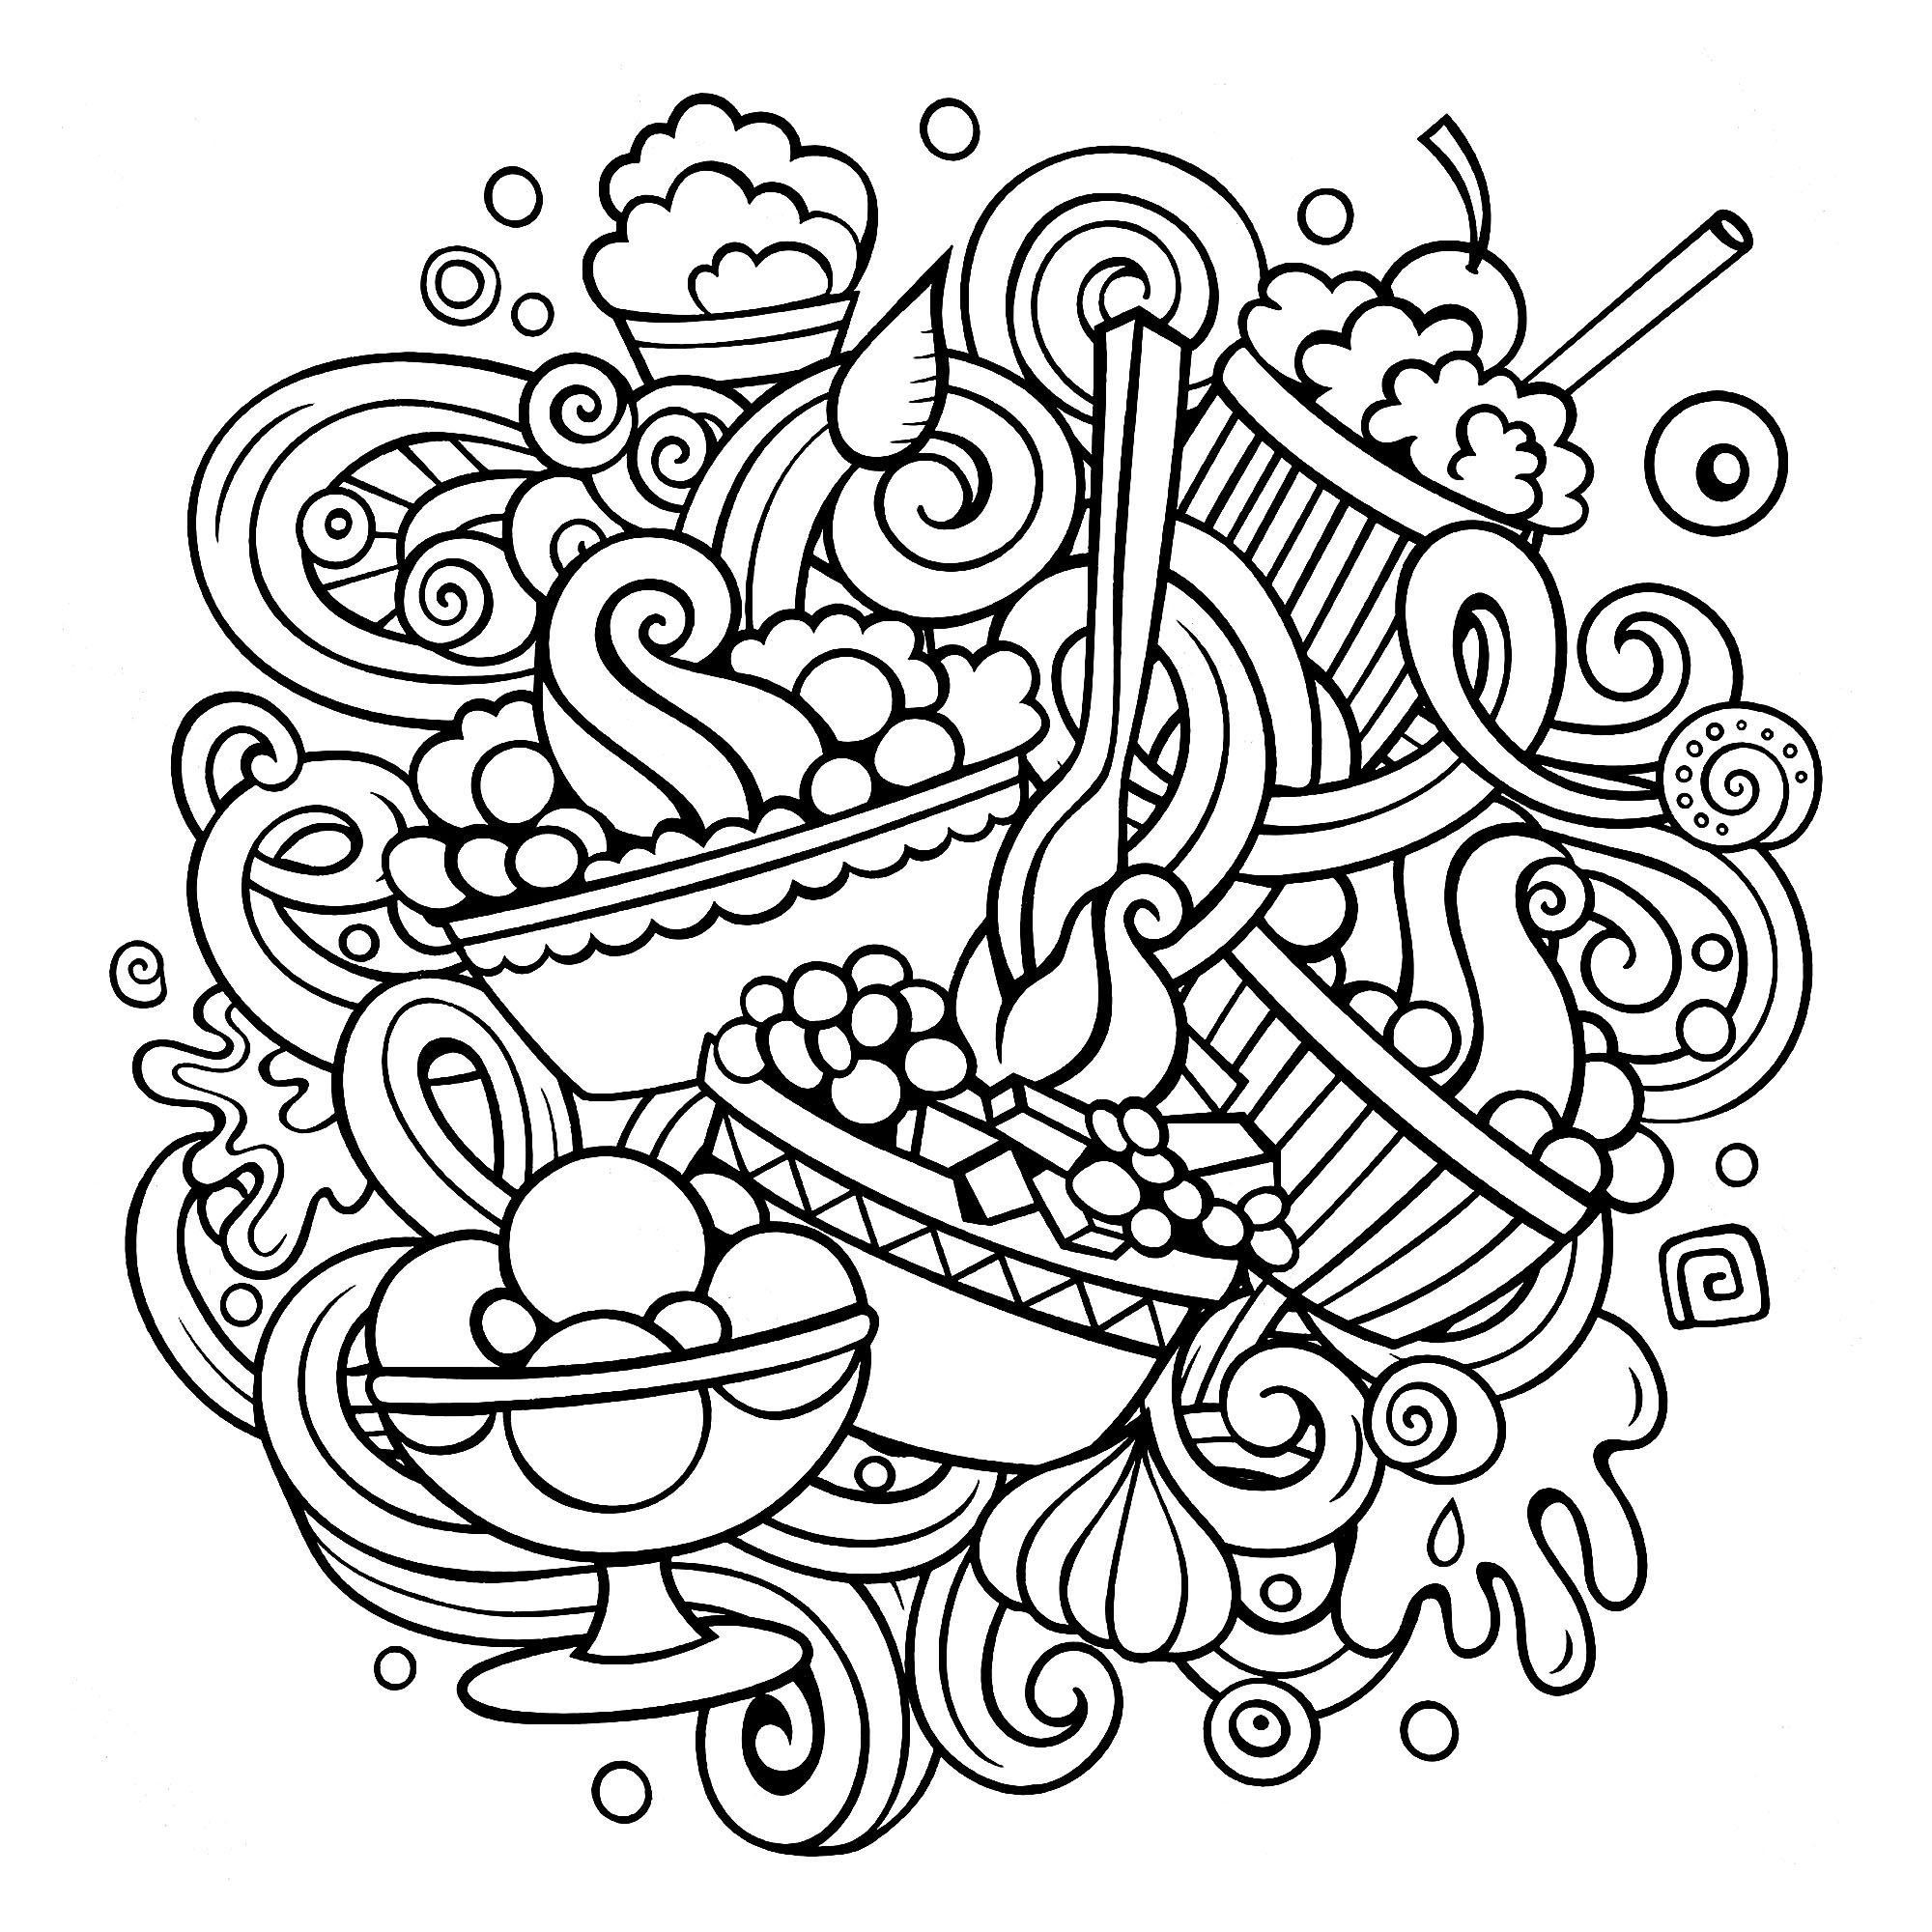 Um desenho ao estilo Doodle com muitos pastéis de aspecto delicioso